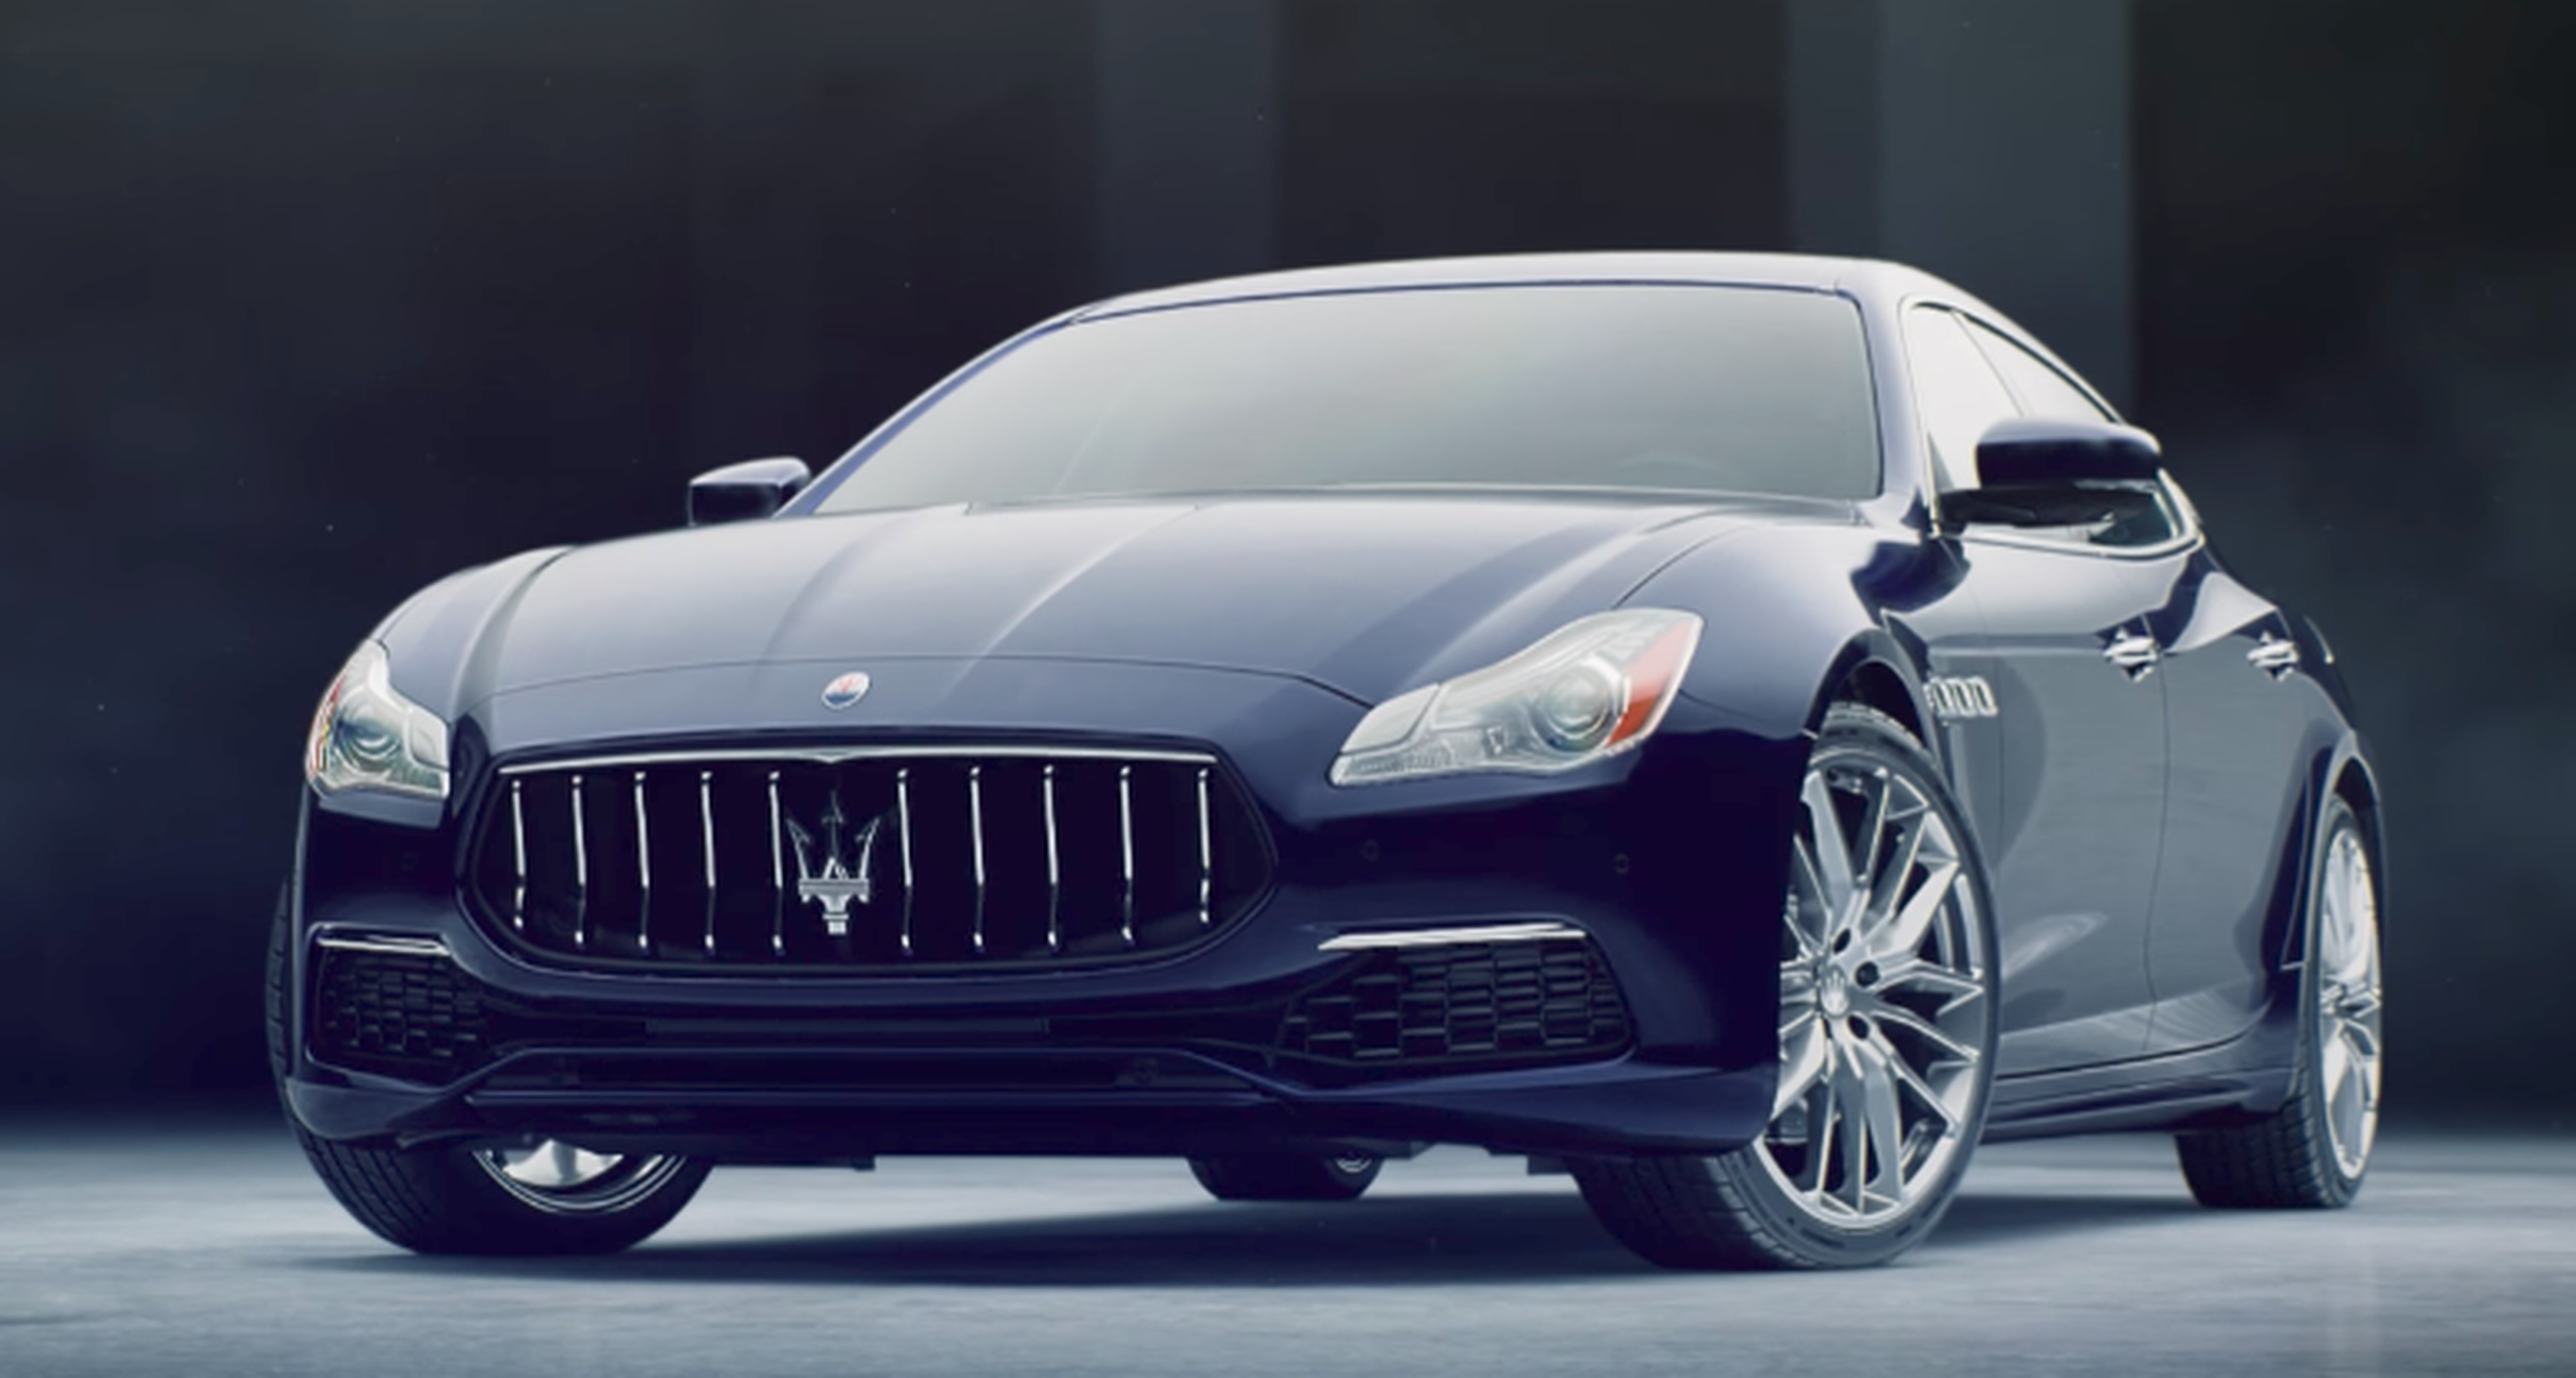 VÍDEO: Maserati Quattropote: mira todas las posibilidades que ofrece